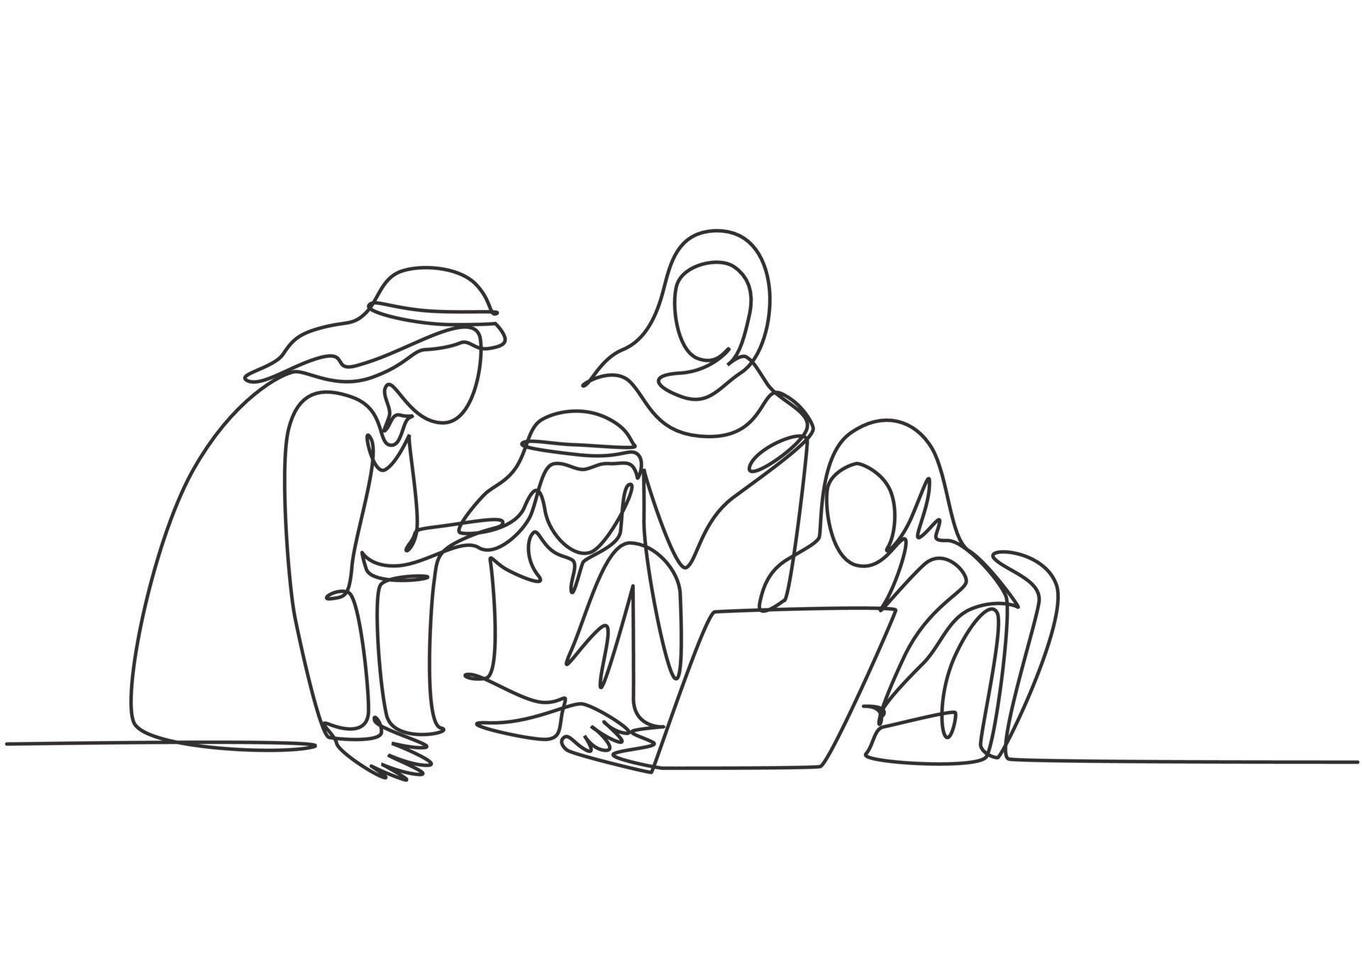 un dibujo de una sola línea de una comunidad empresarial musulmana joven discutiendo juntos un proyecto social. tela de arabia saudita shmag, pañuelo en la cabeza, ghutra, hijab, velo. Ilustración de vector de diseño de dibujo de línea continua